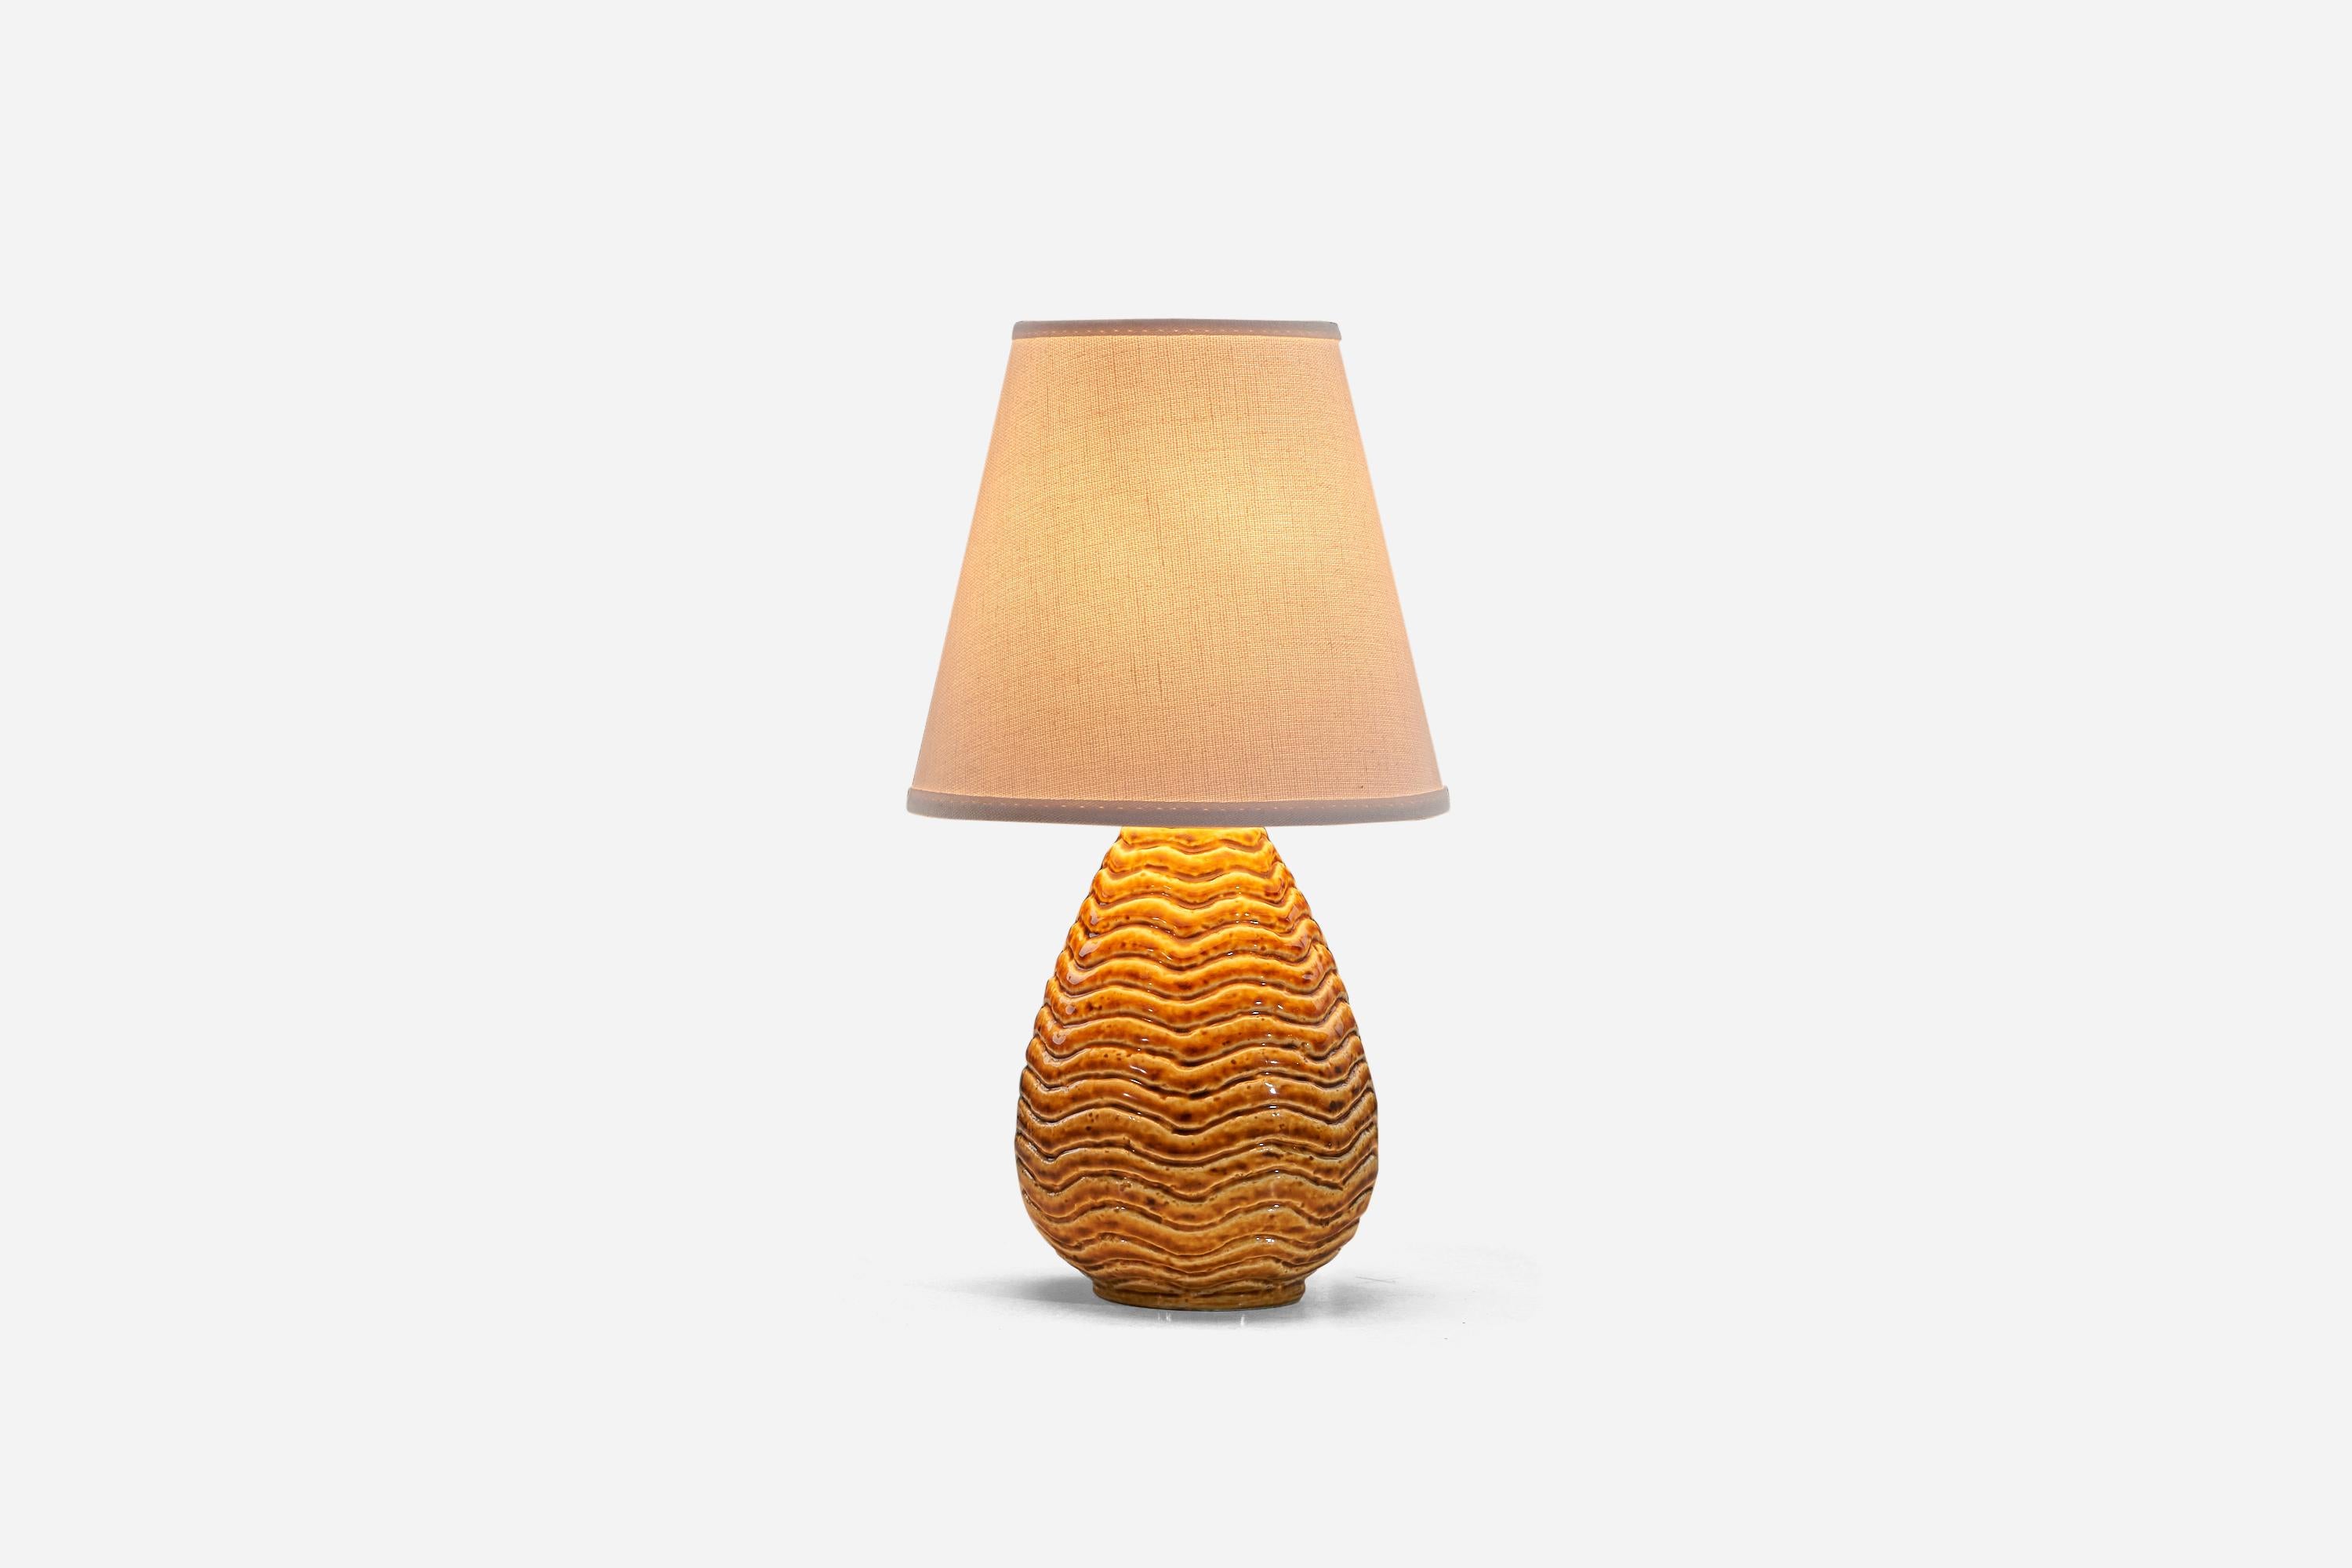 European Gunnar Nylund, Table Lamp, Orange-Glazed Stoneware, Rörstand, Sweden, 1940s For Sale